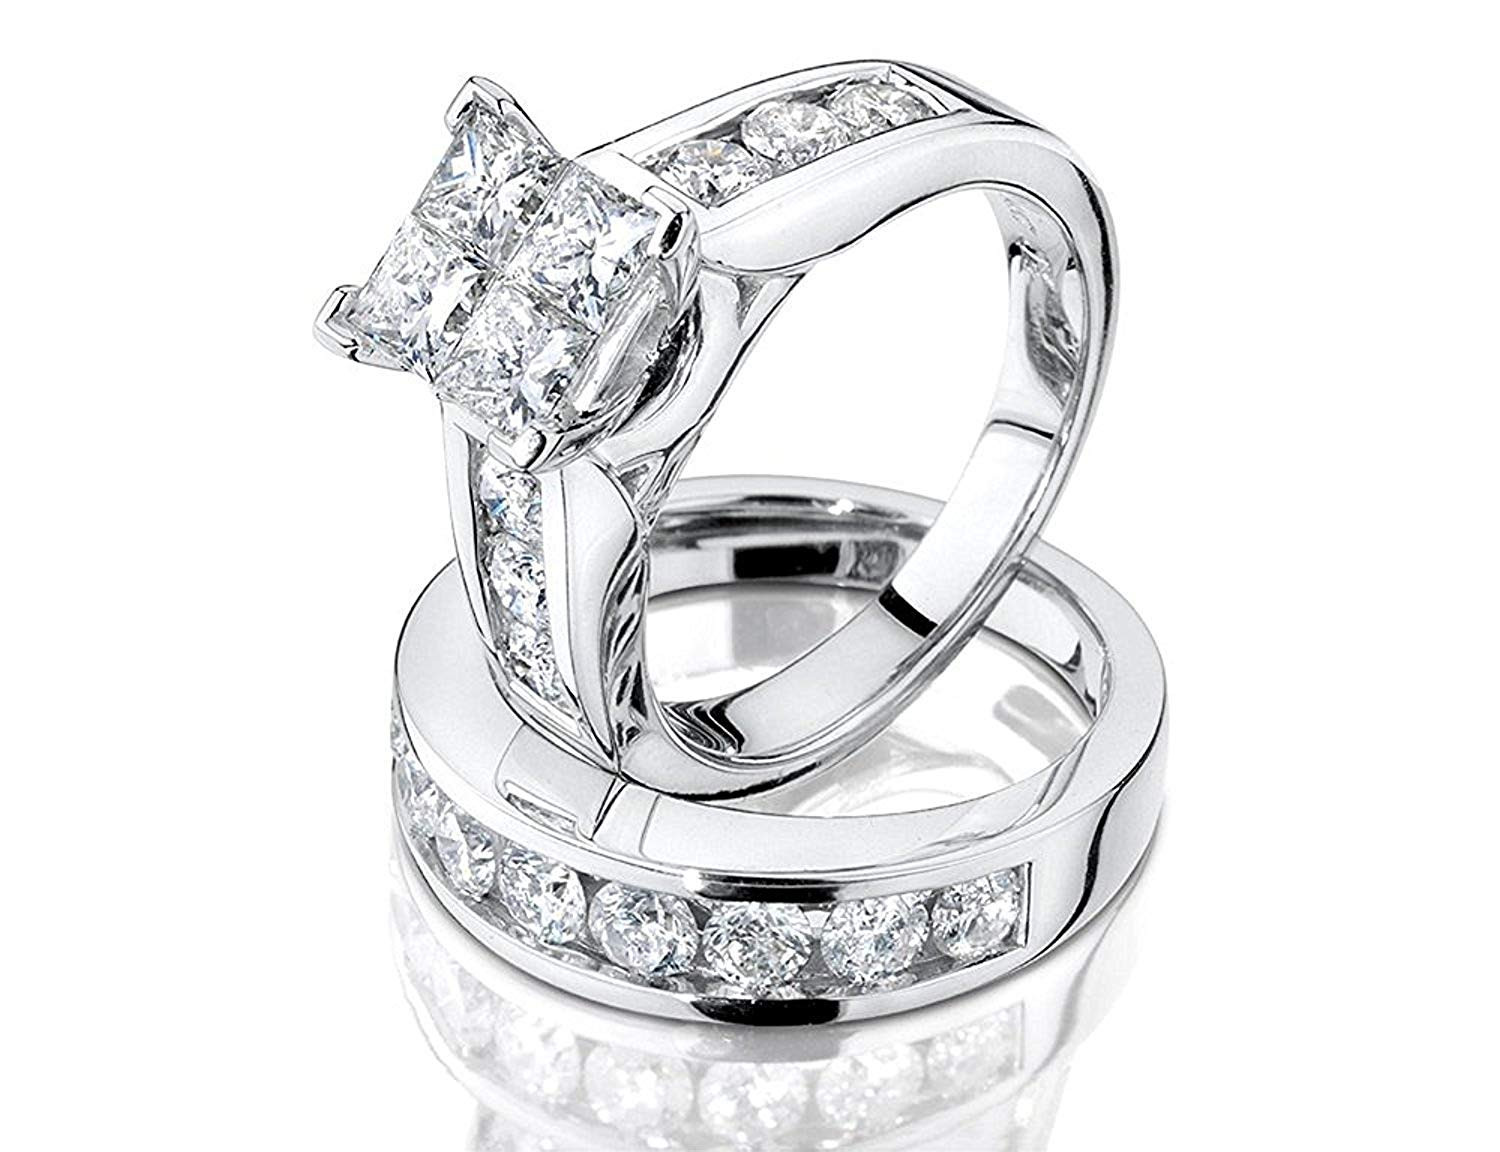 2 Carat Princess Cut Engagement Ring
 1 2 Carat ctw Princess Cut Diamond Engagement Rings for